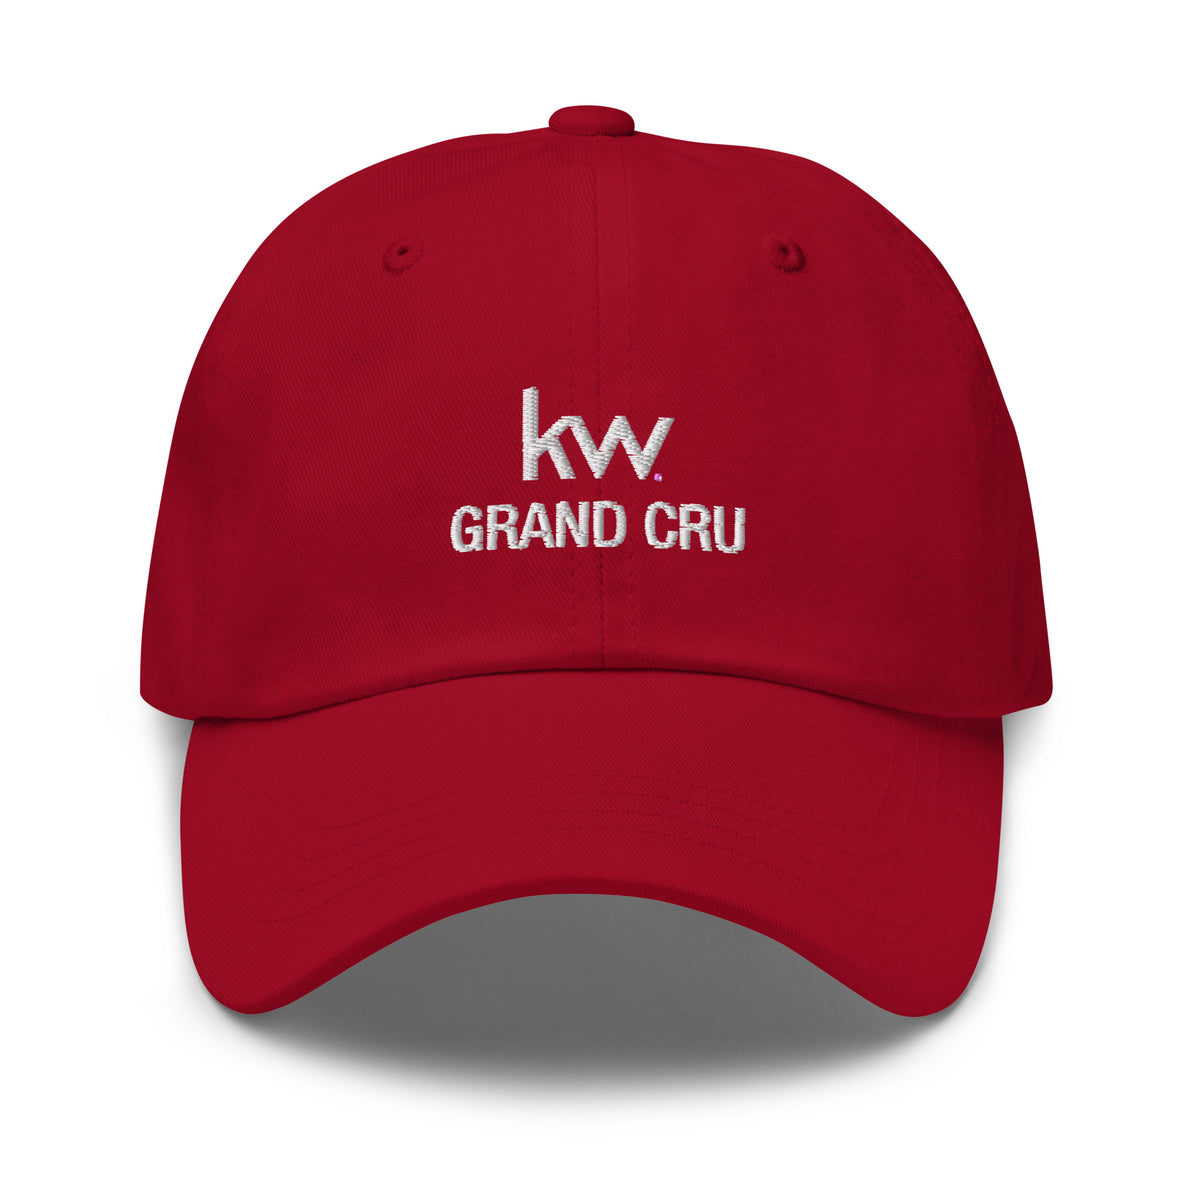 Casquette brodée - KW Grand Cru